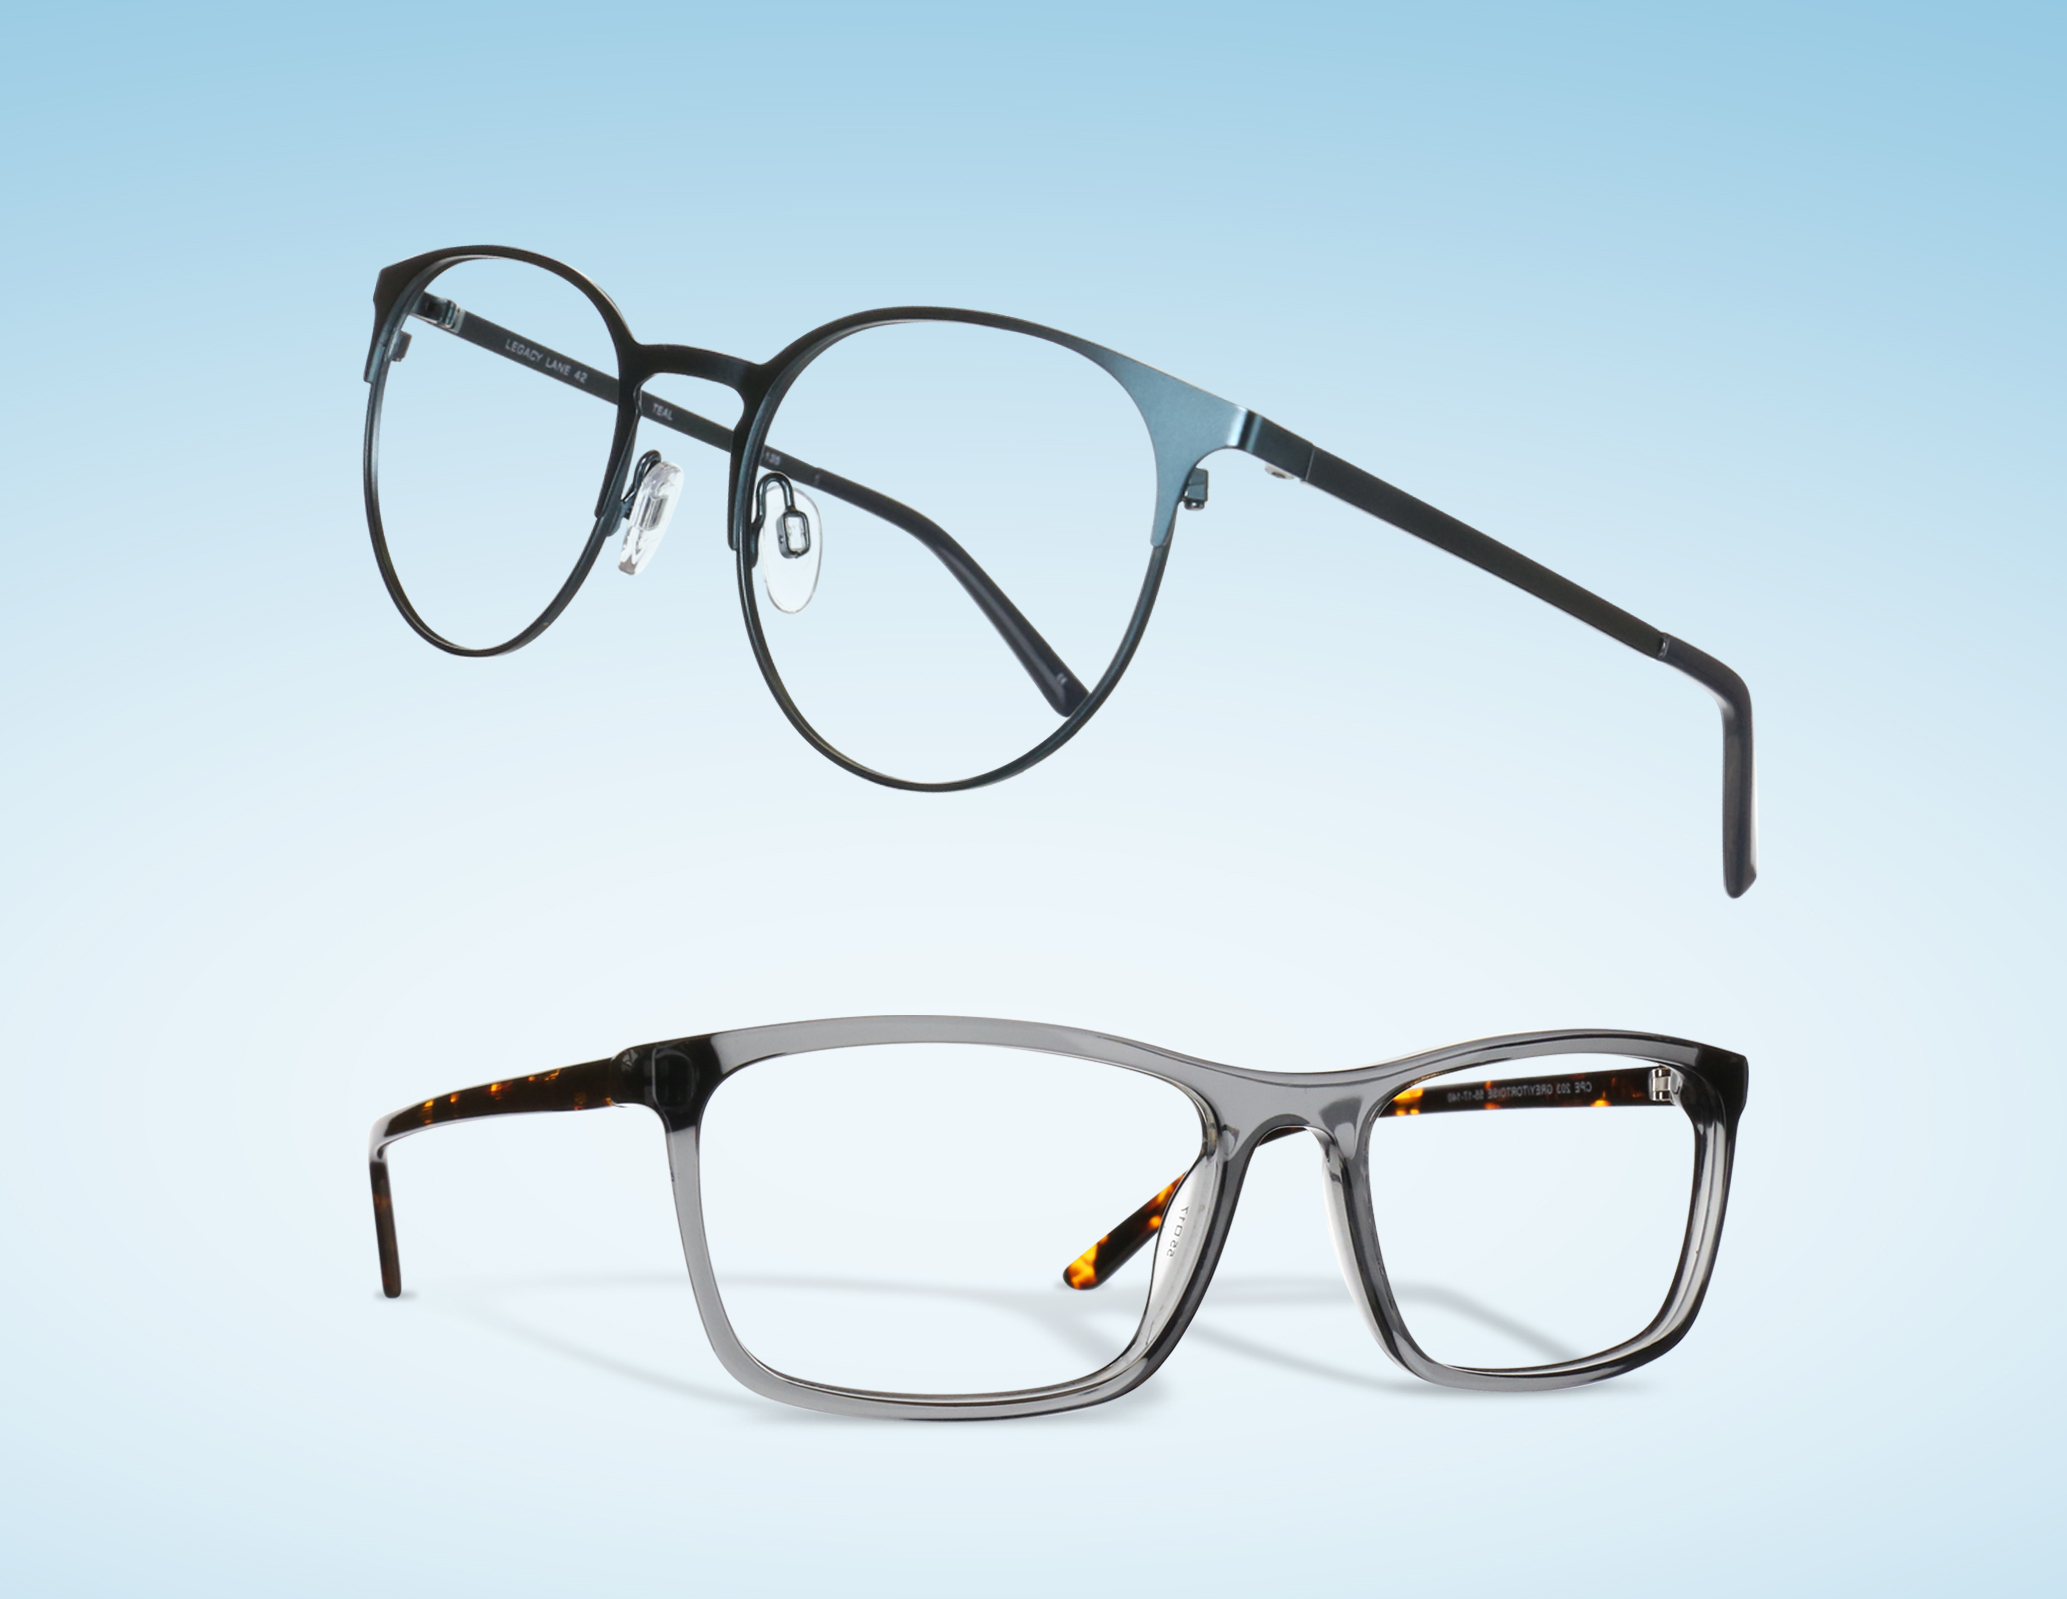 Two pairs of prescription eyeglasses